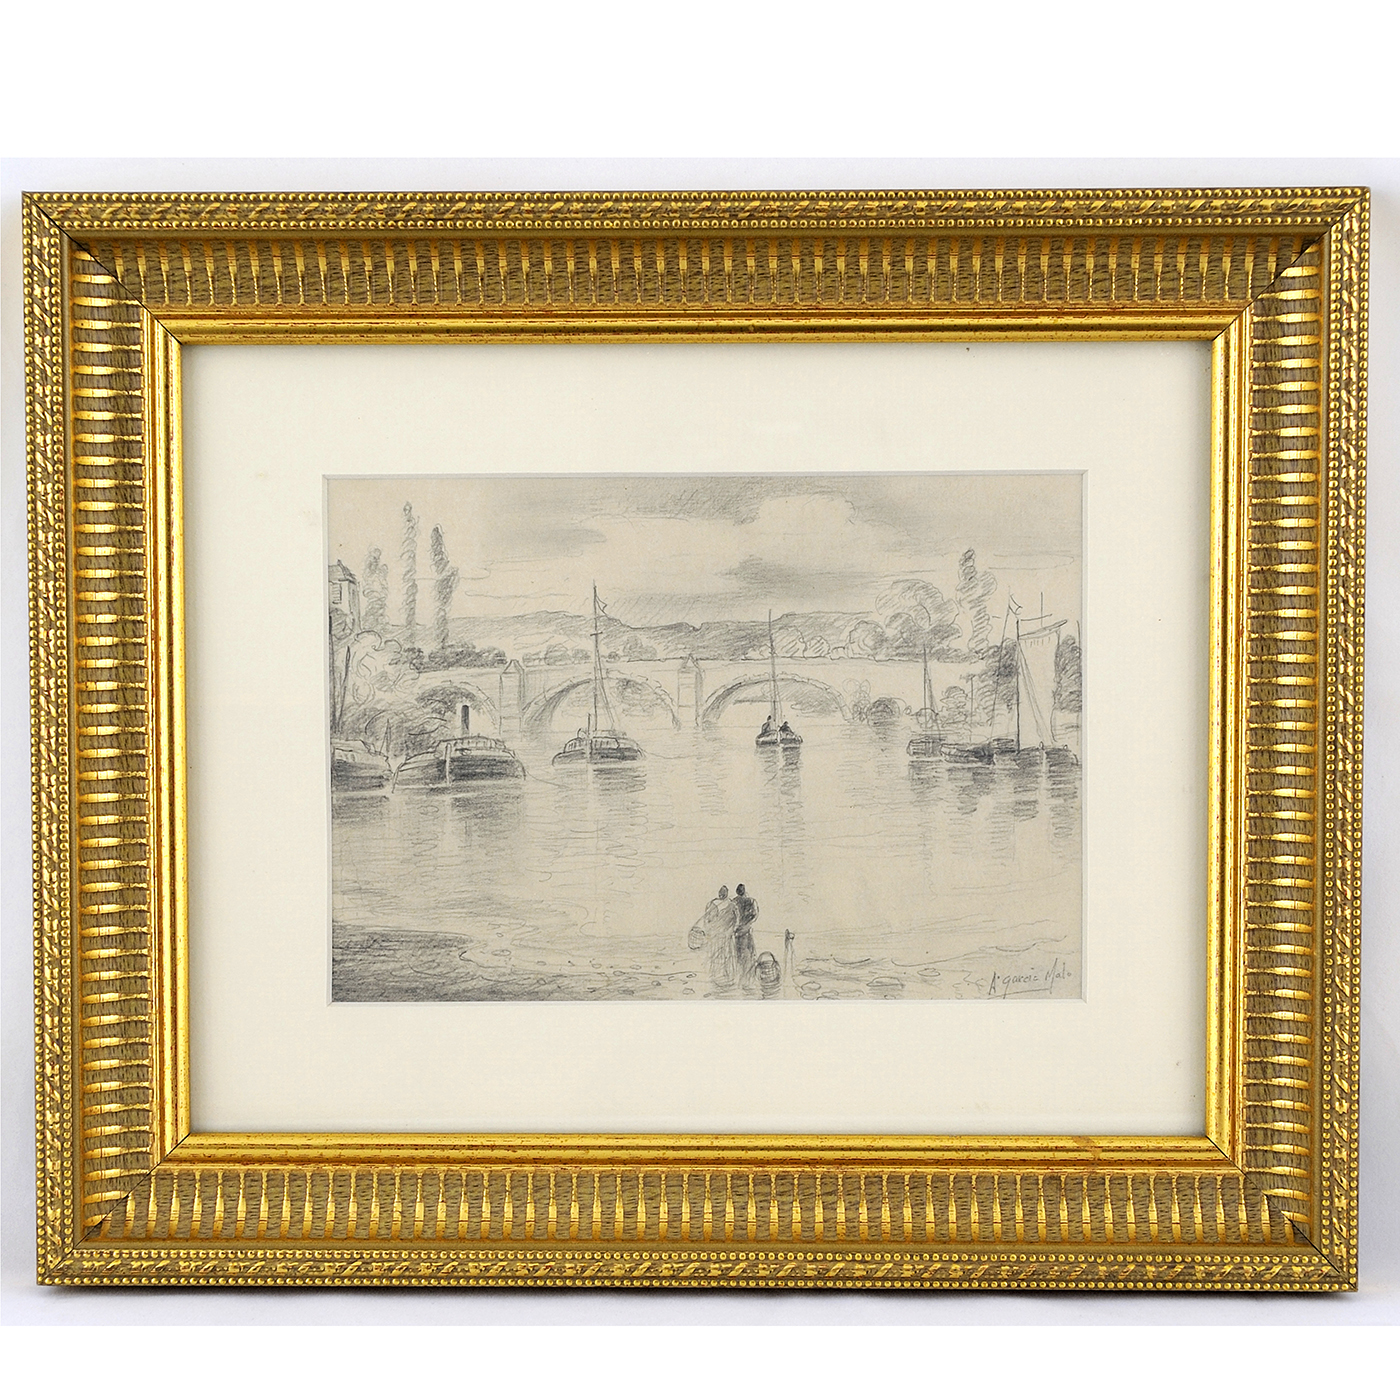 ANTONIO GARCÍA MALO. Pencil drawing. "" Bridge over the river Seine "